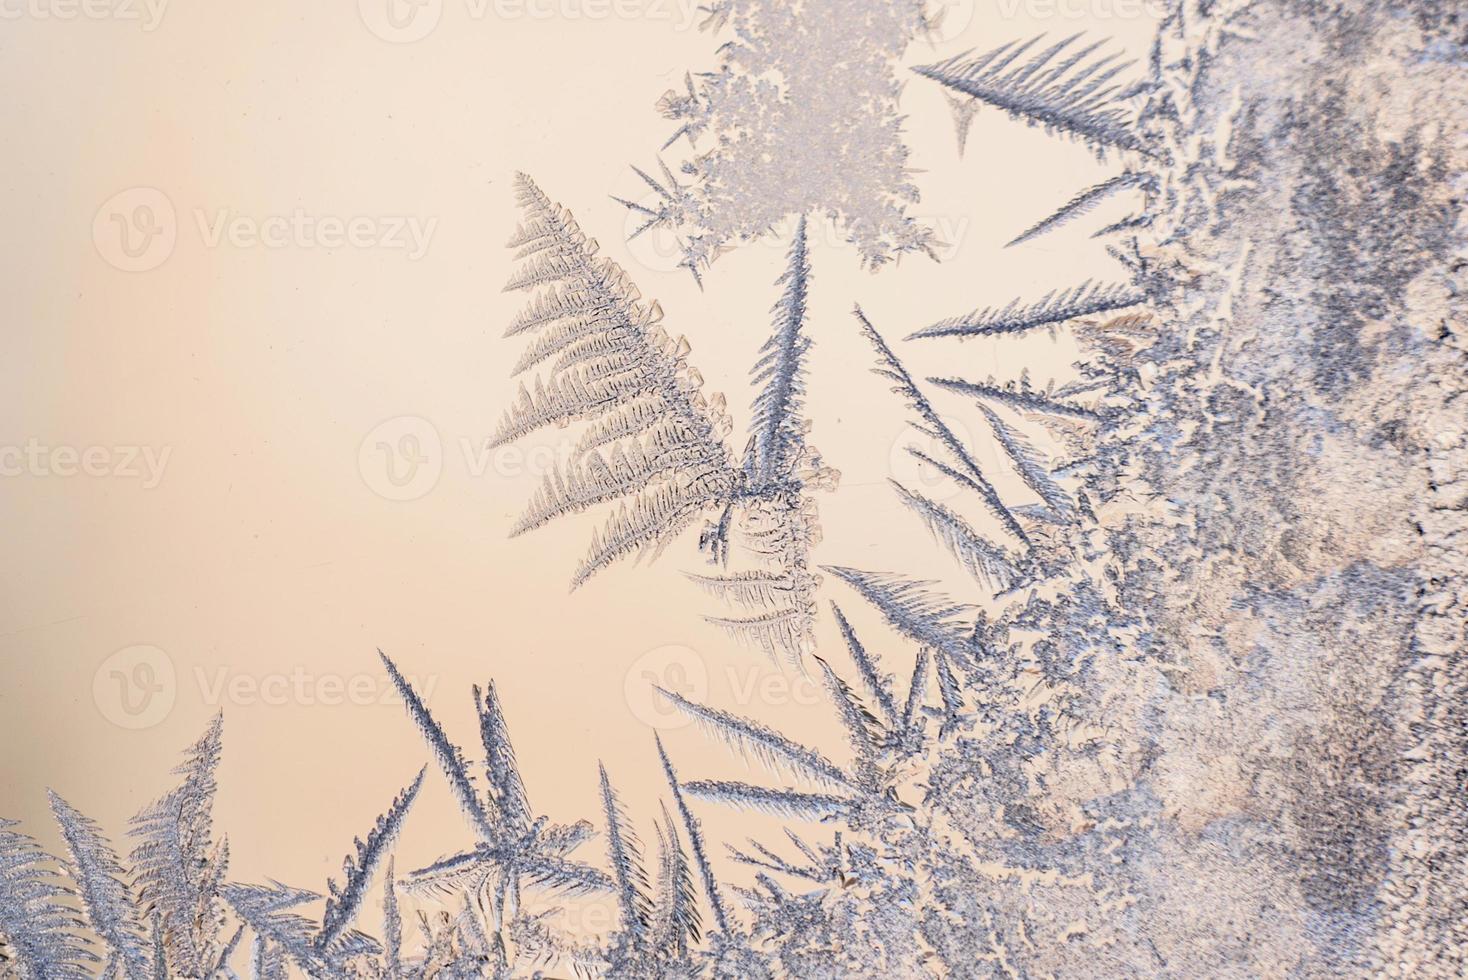 motifs de givre sur la vitre de la fenêtre d'hiver par temps glacial photo